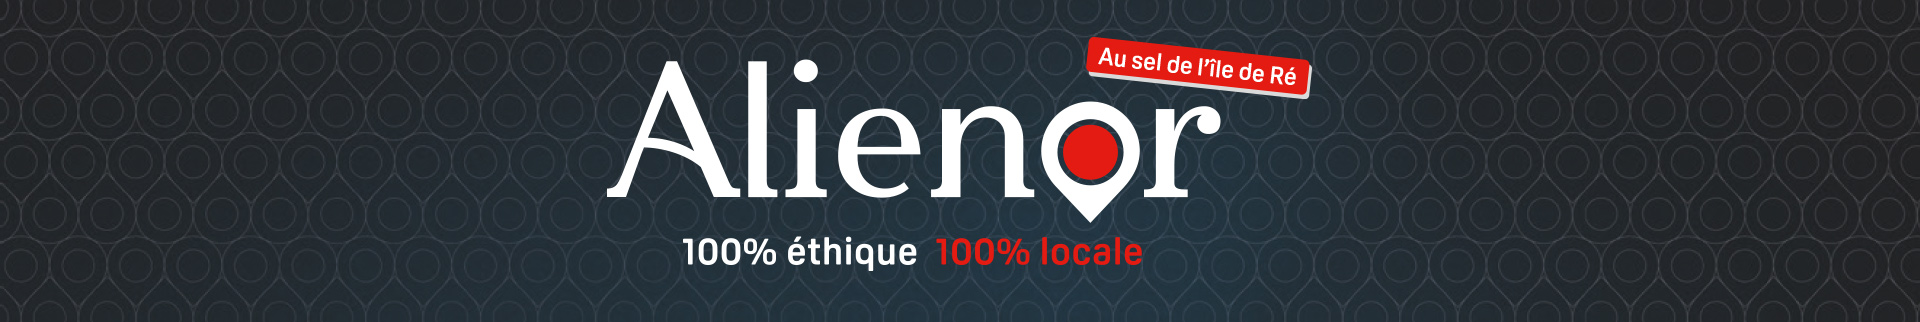 Logo Aliénor, 100%étique, 100% locale